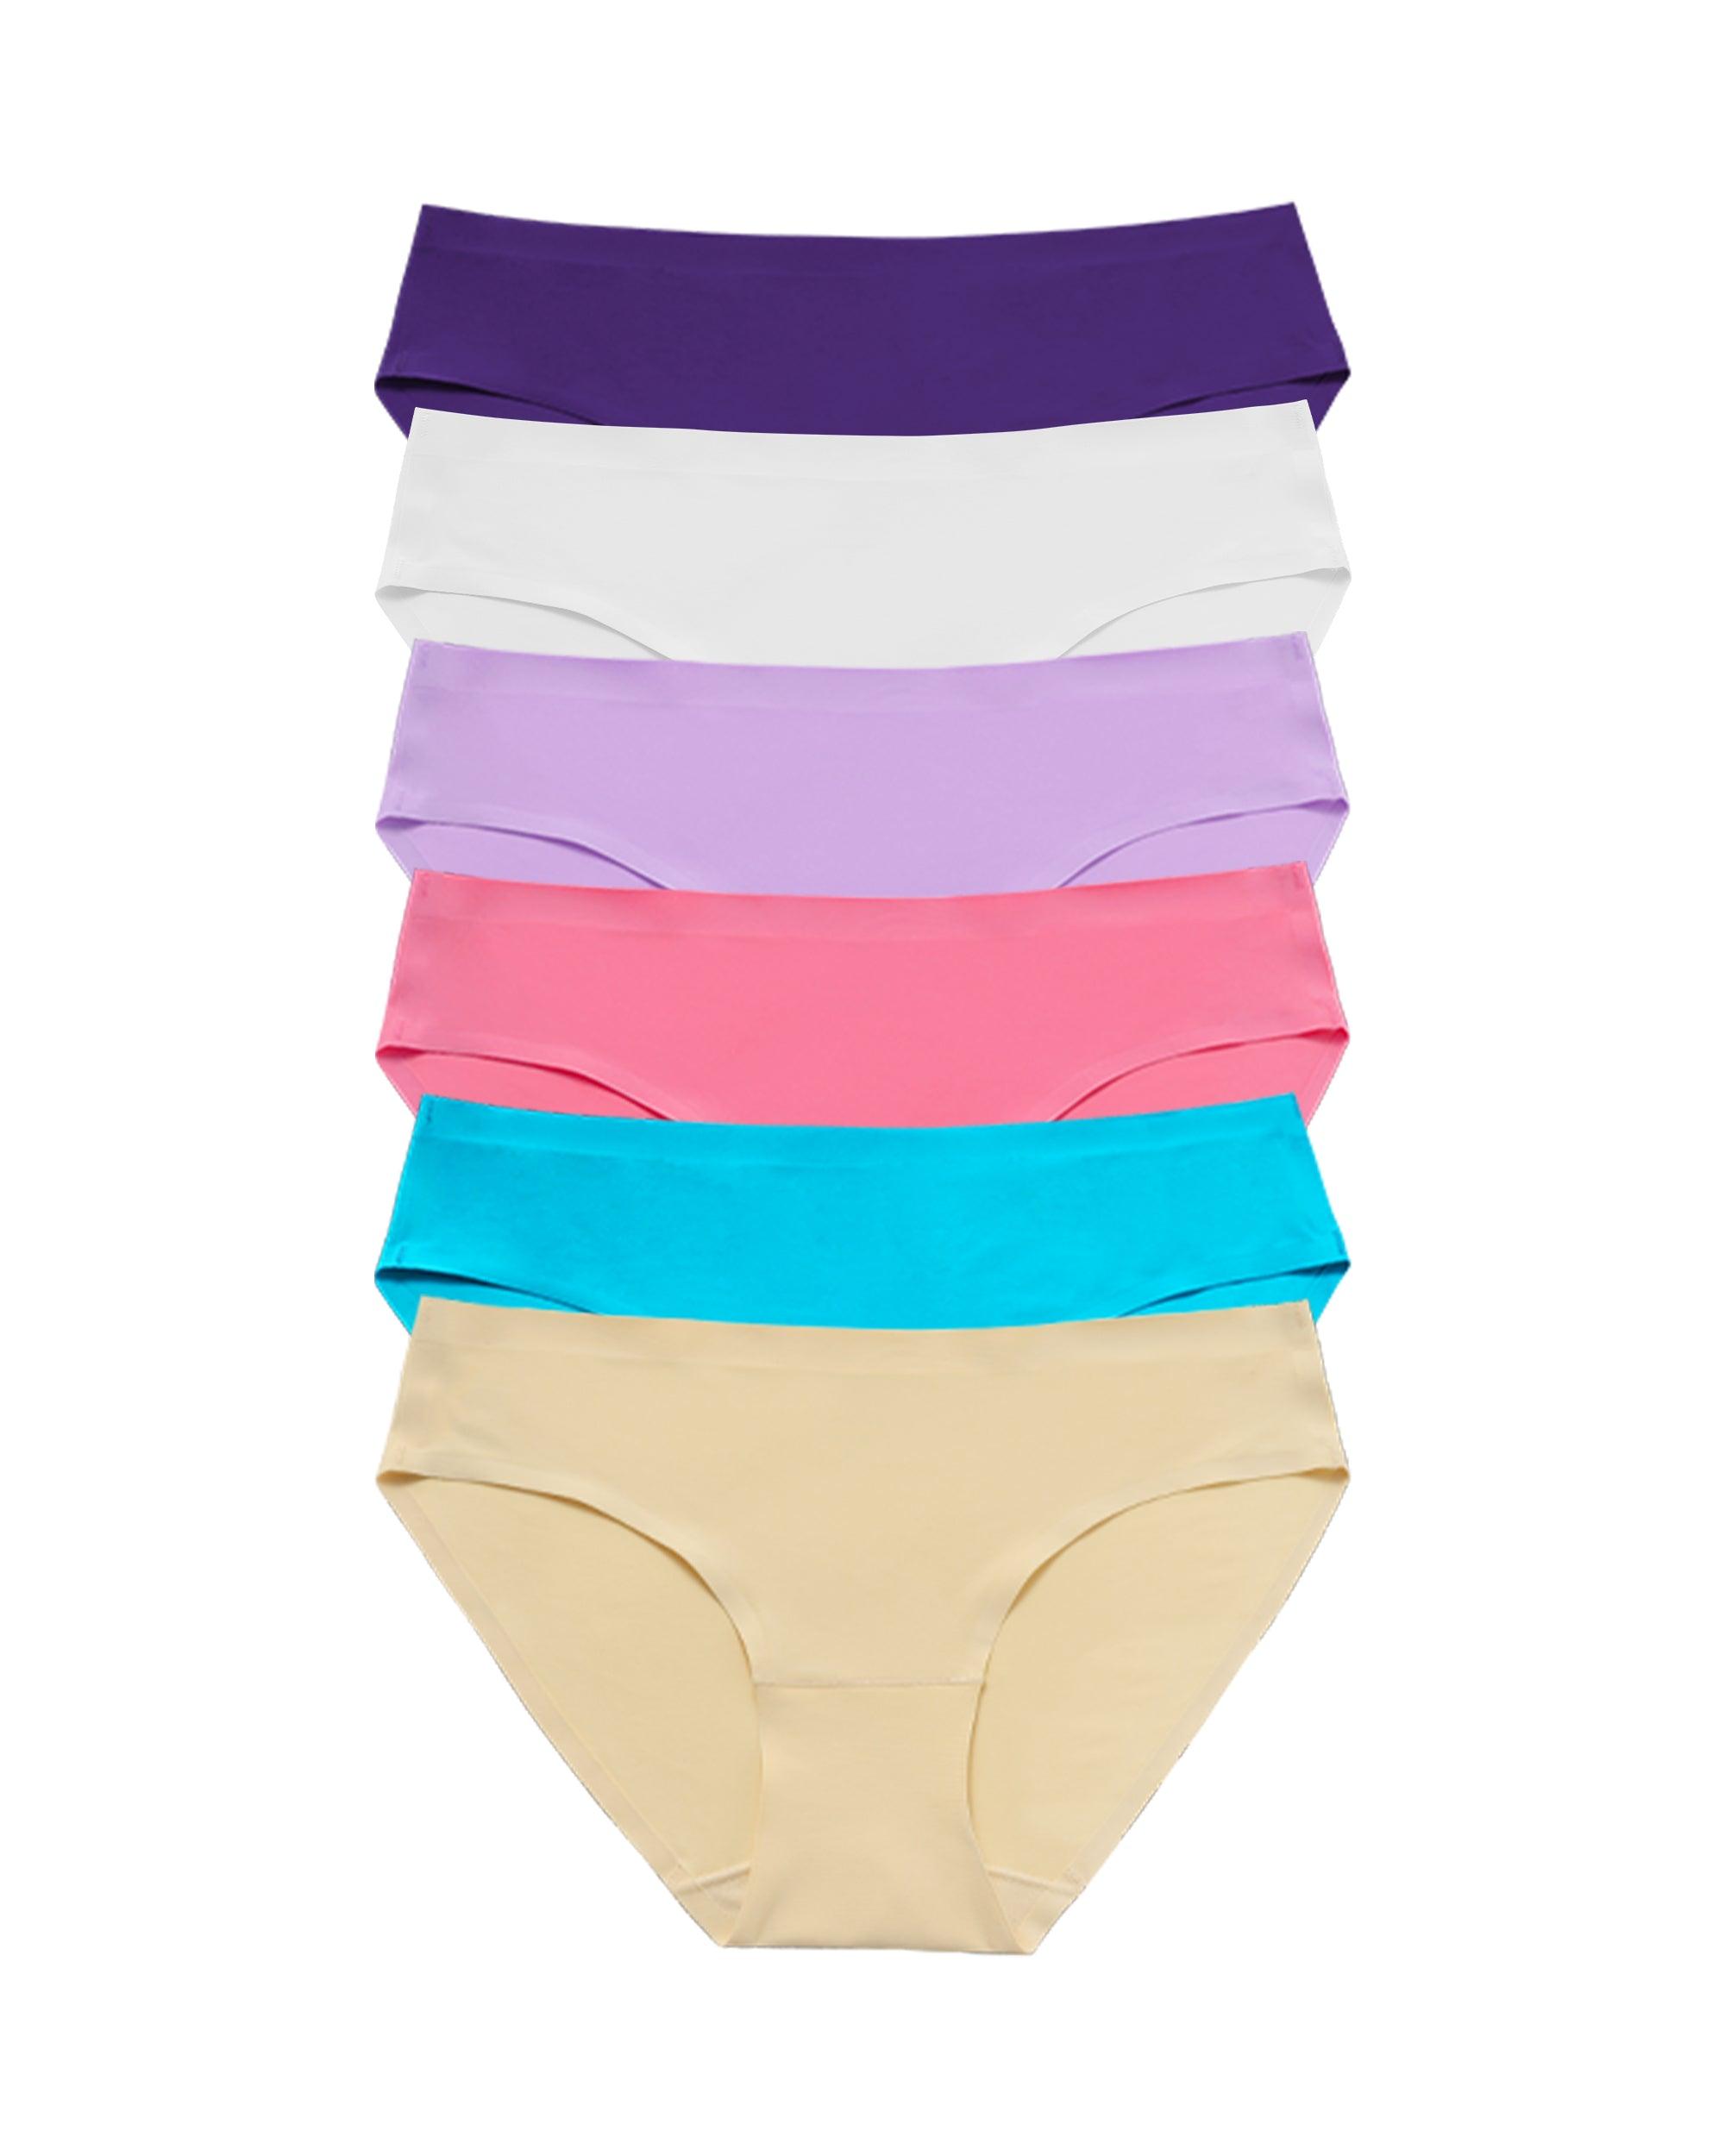 ADAGRO Women's Underwear Letter Tape Panel Wireless Bra (Color